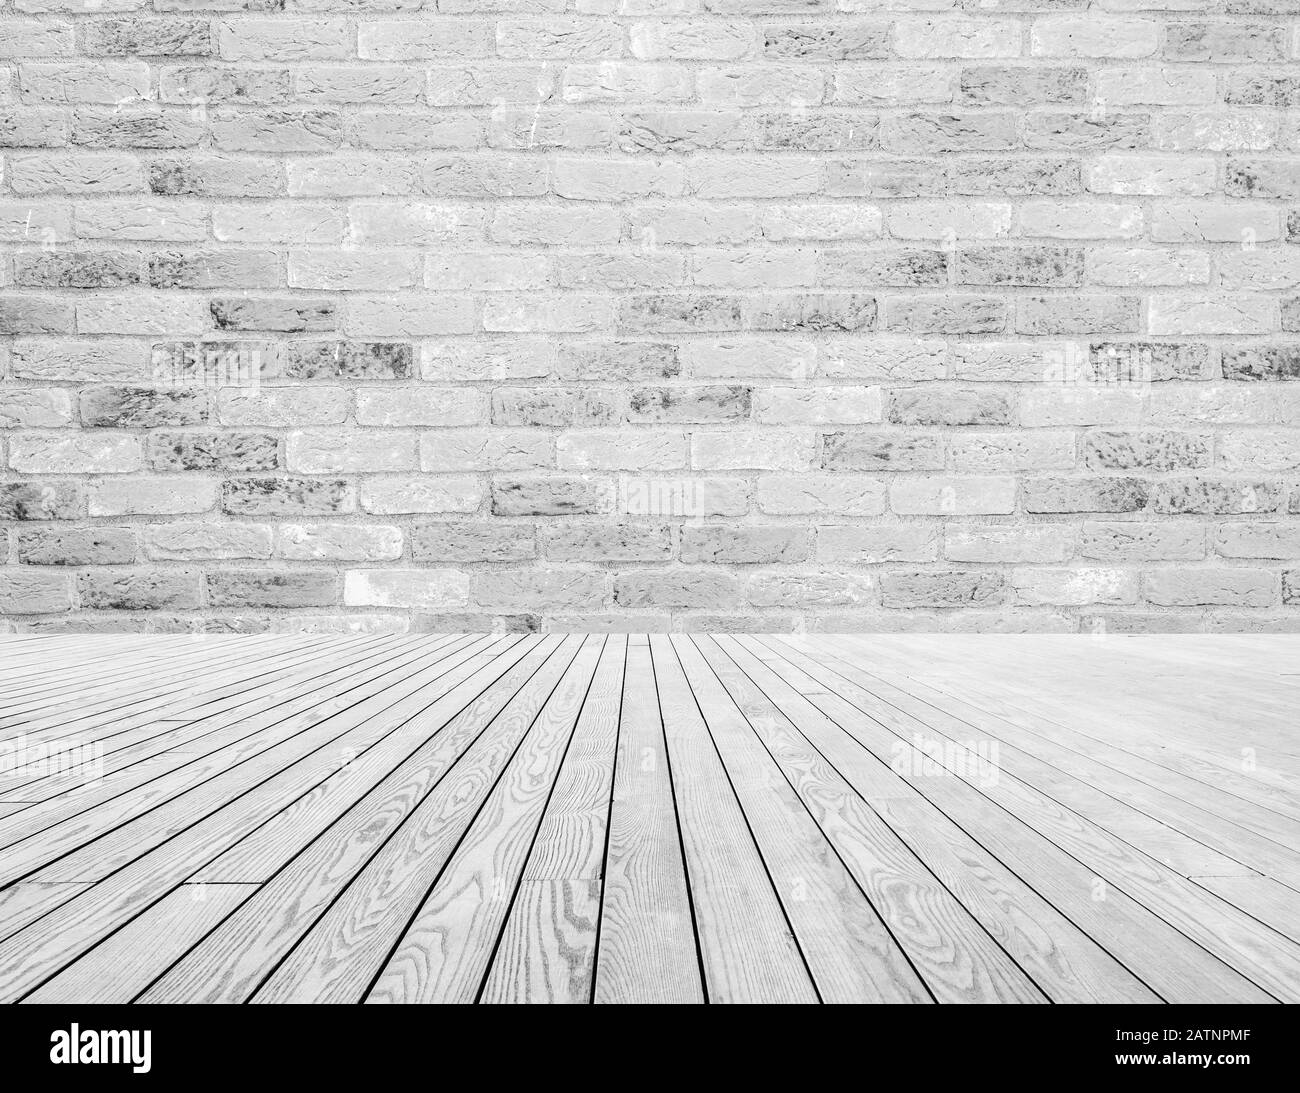 Hellgraue und weiße Ziegelsteine an der Wand und weiße Holzfußbodendekoration. Struktur- und Hintergrundkonzept Stockfoto